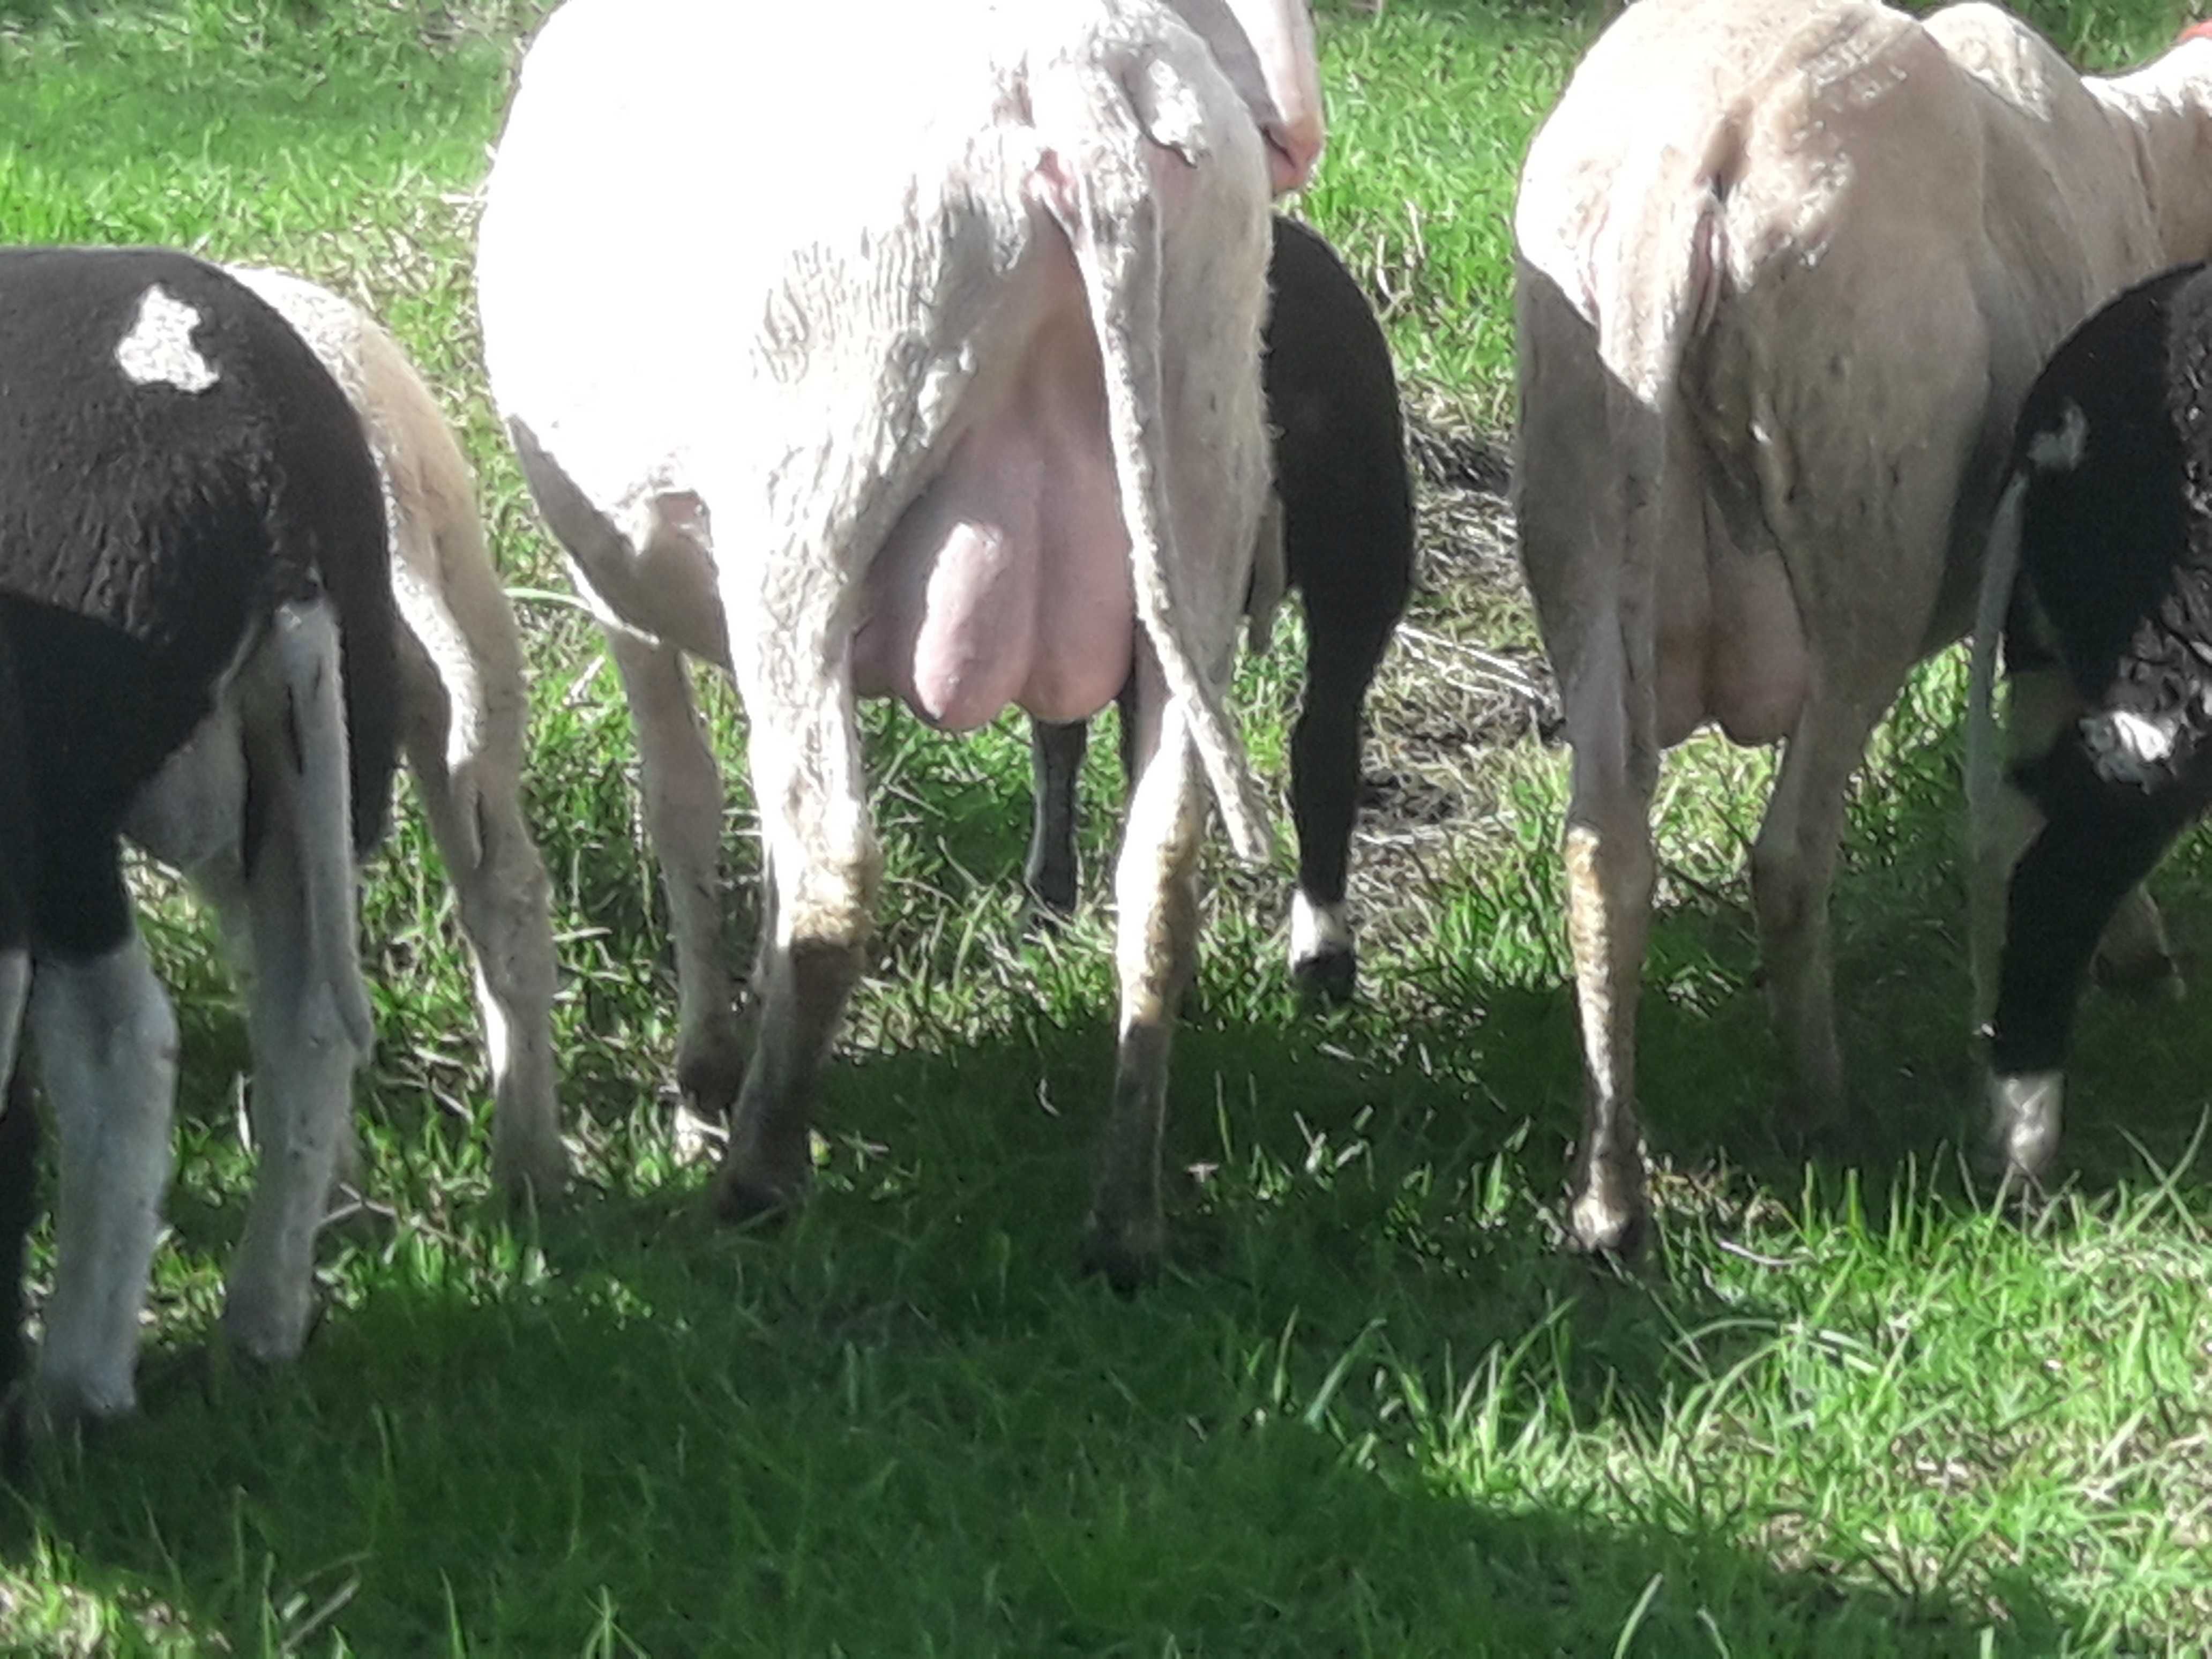 owca mleczna fryzyjska jagnięta białe i kolorowe